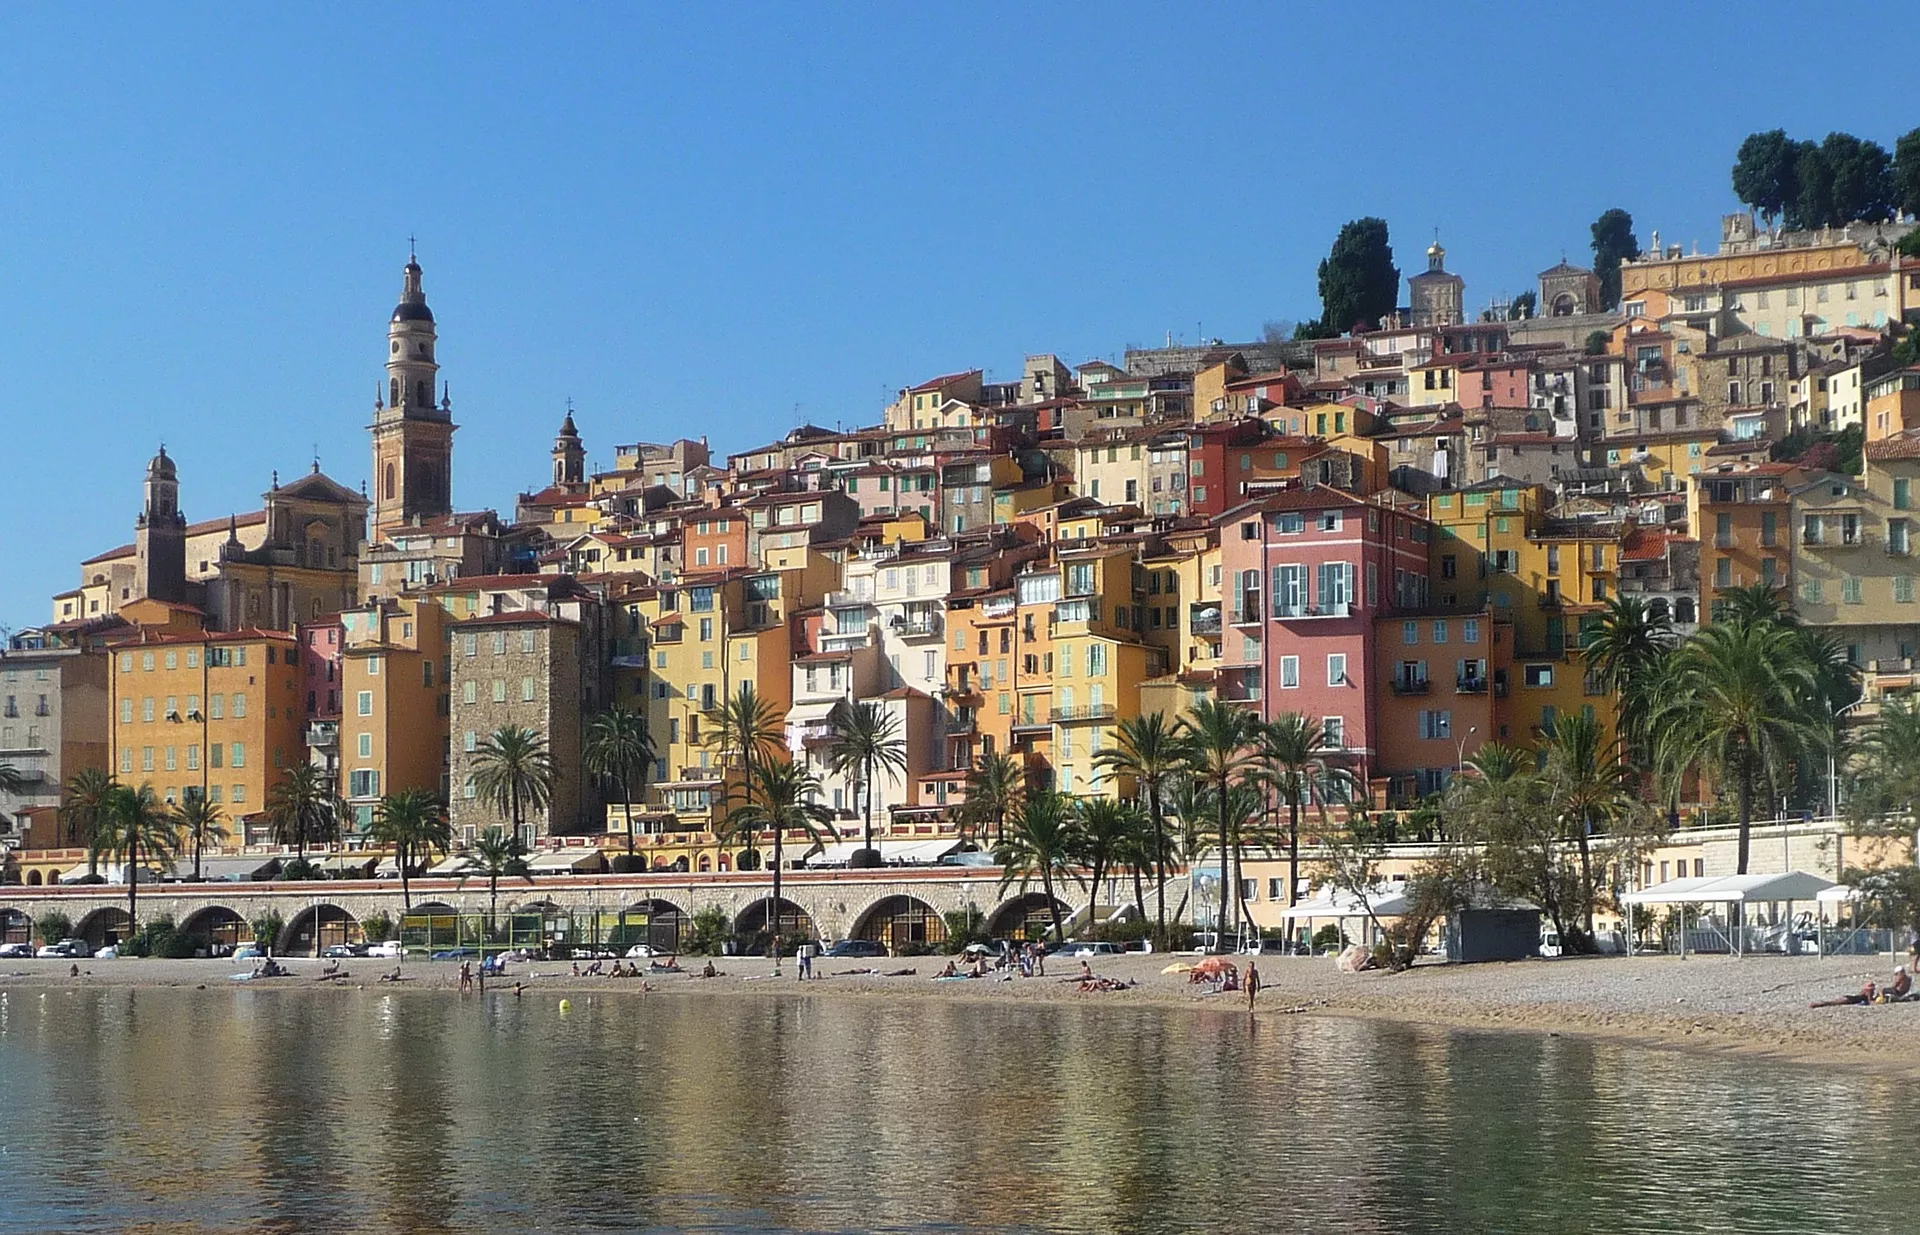 Main image of article: La French Riviera, ciel bleu azur et paillettes.